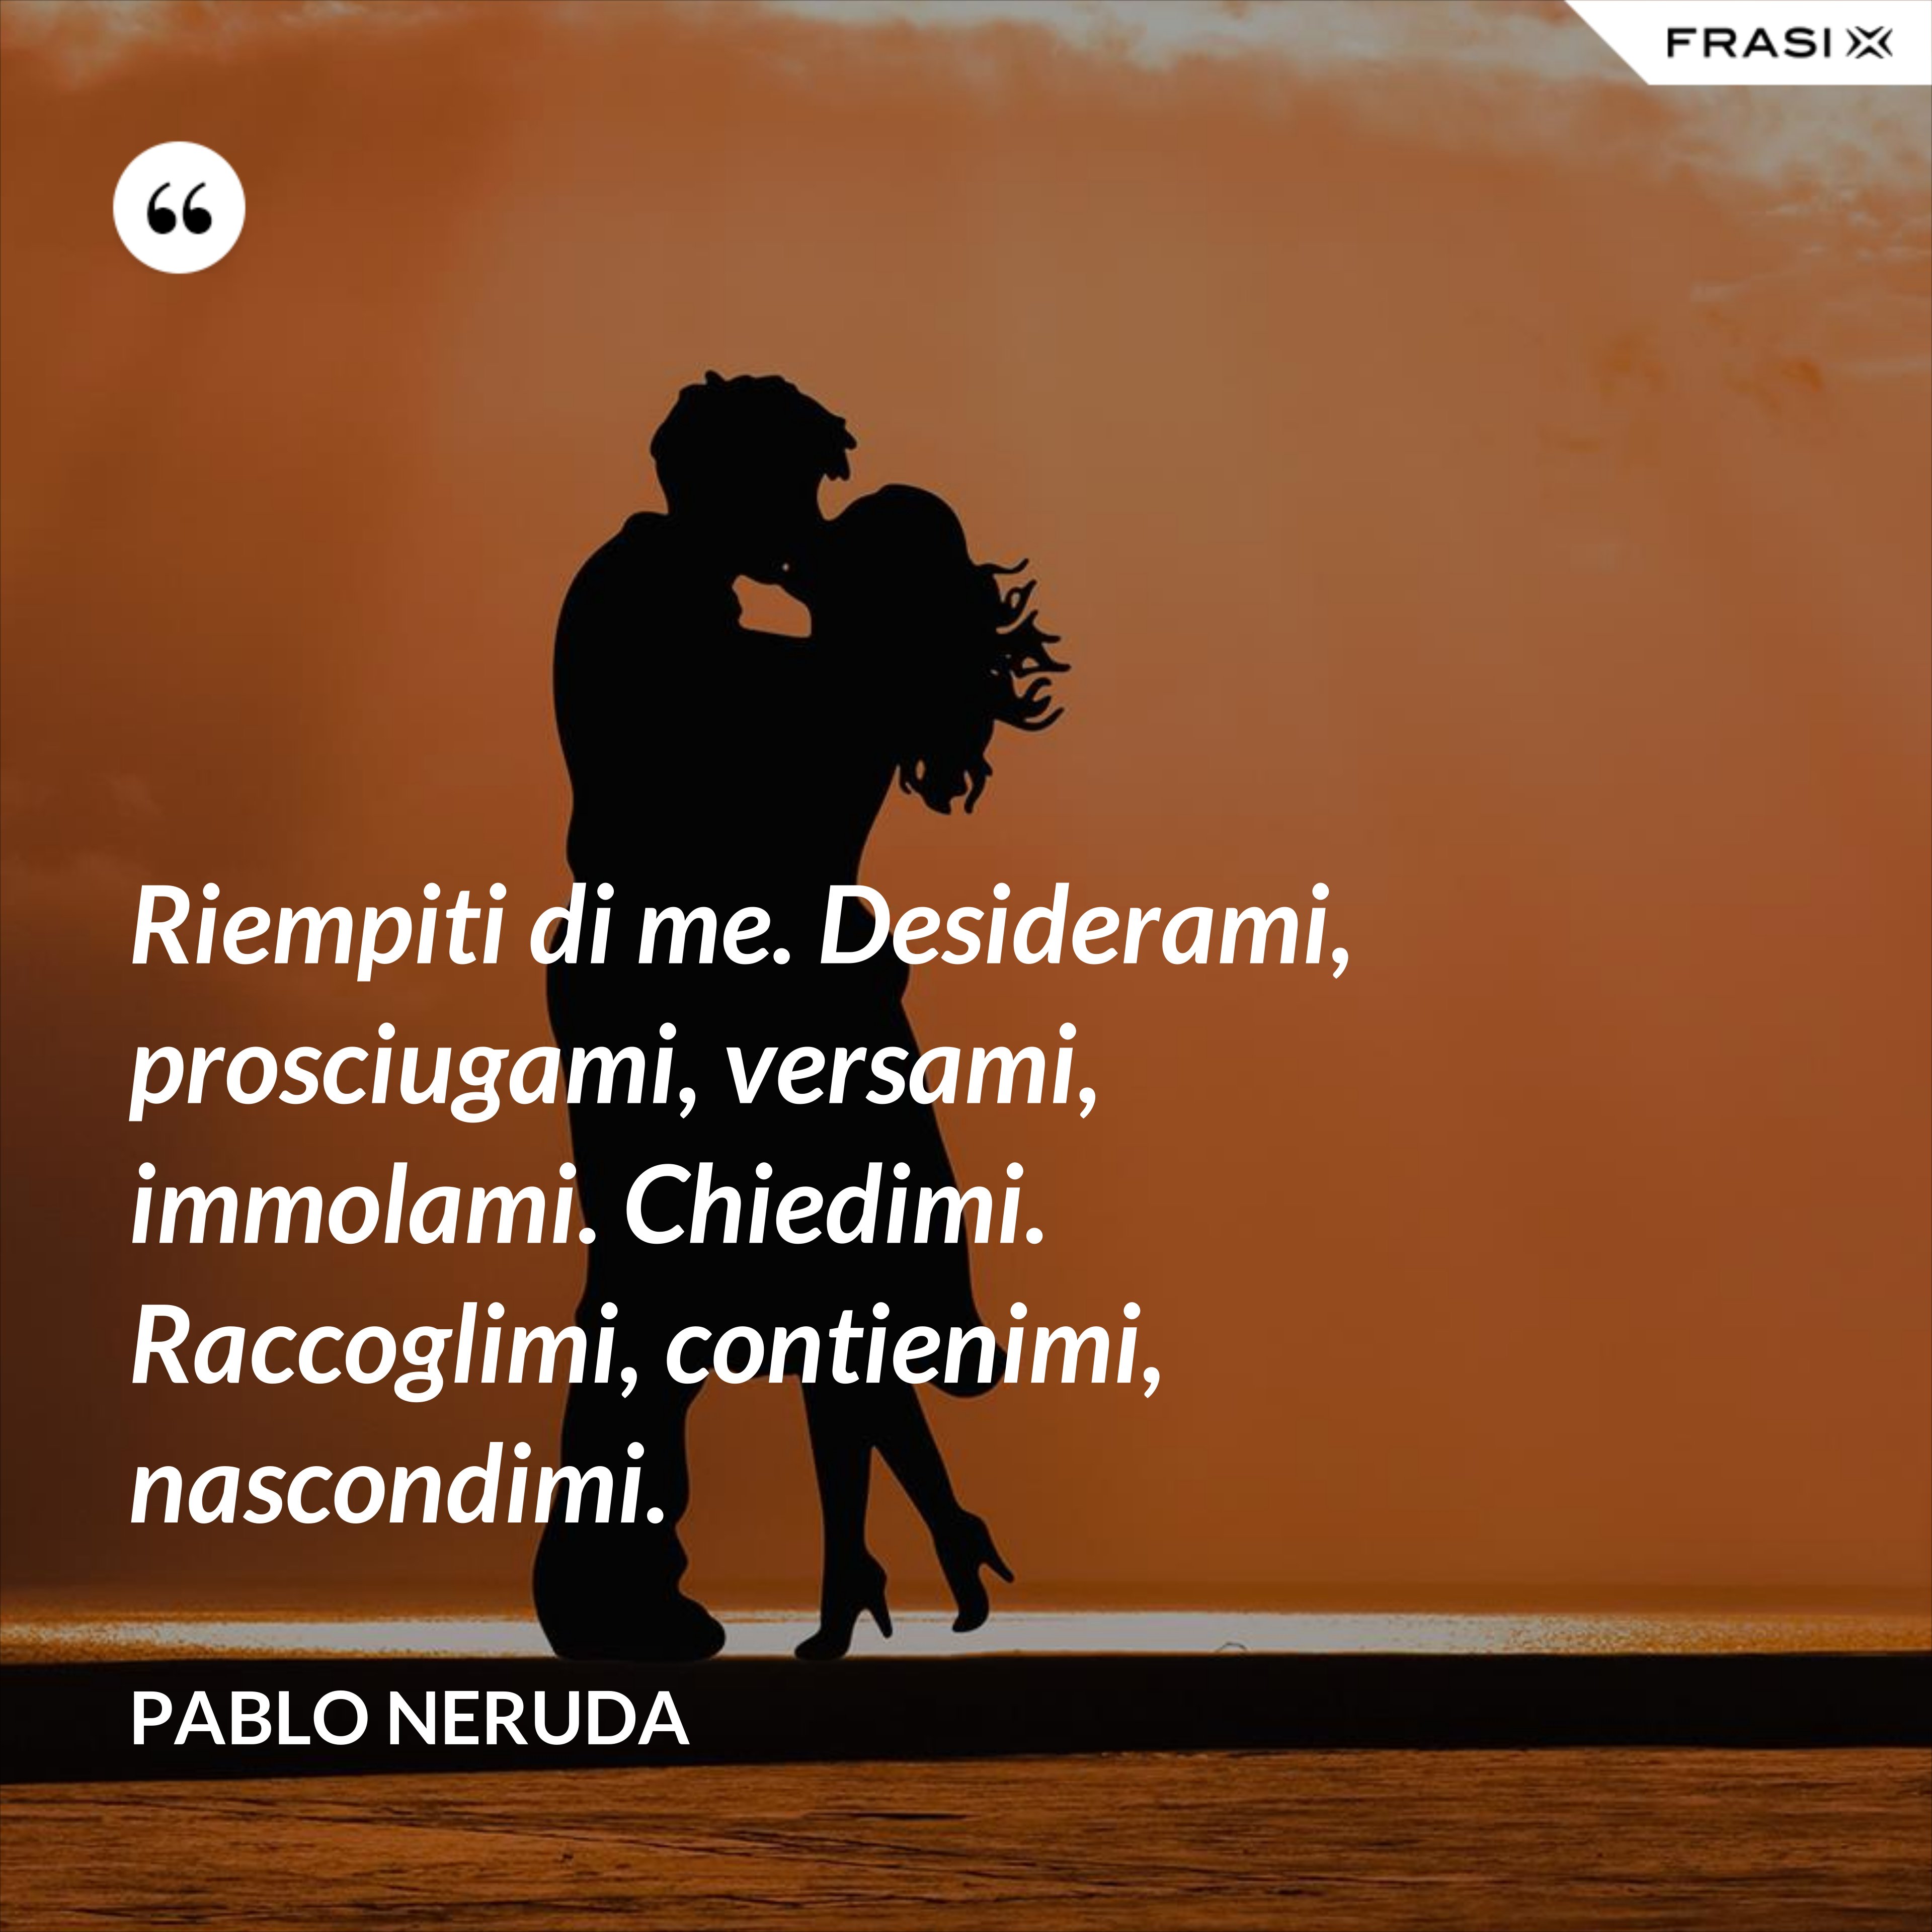 Riempiti di me. Desiderami, prosciugami, versami, immolami. Chiedimi. Raccoglimi, contienimi, nascondimi. - Pablo Neruda